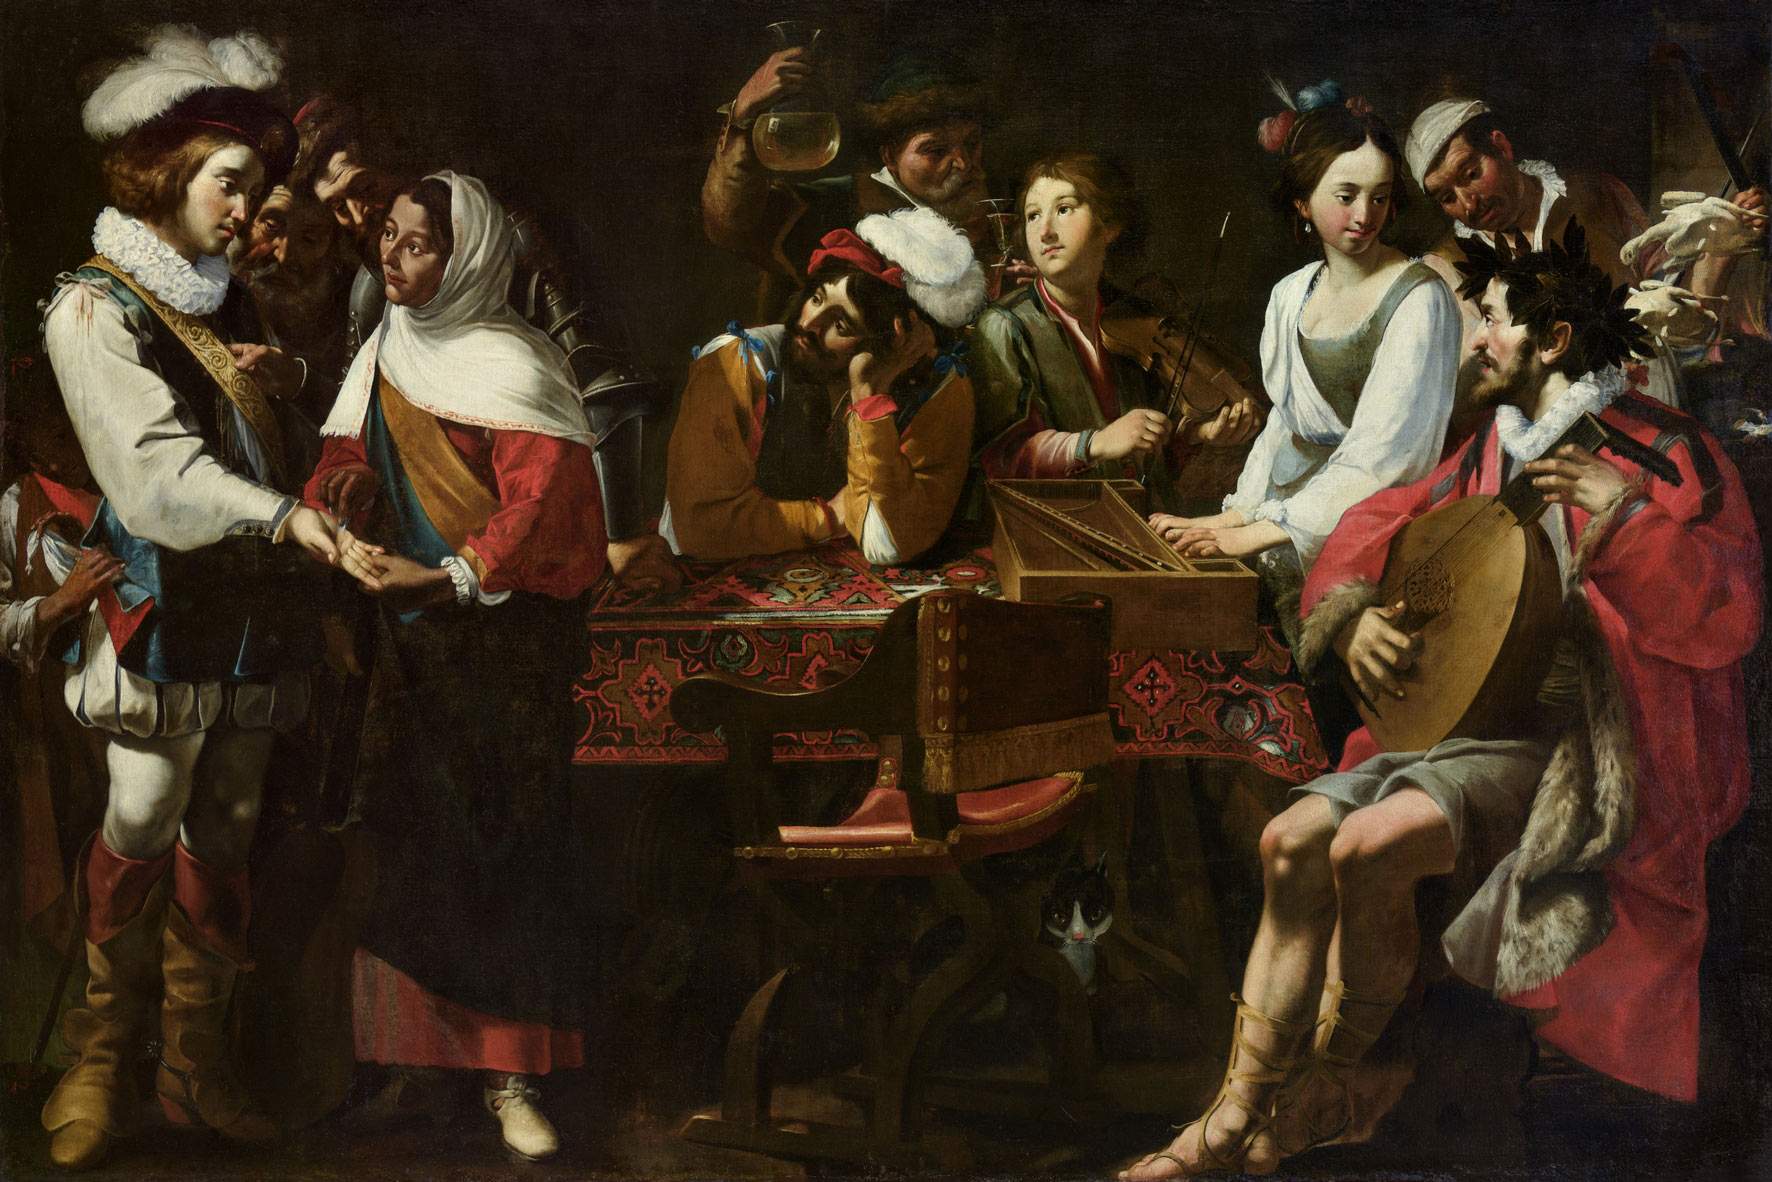 Une conférence majeure sur le baroque pour étudier la persistance et le remaniement du caravagisme au XVIIe siècle.